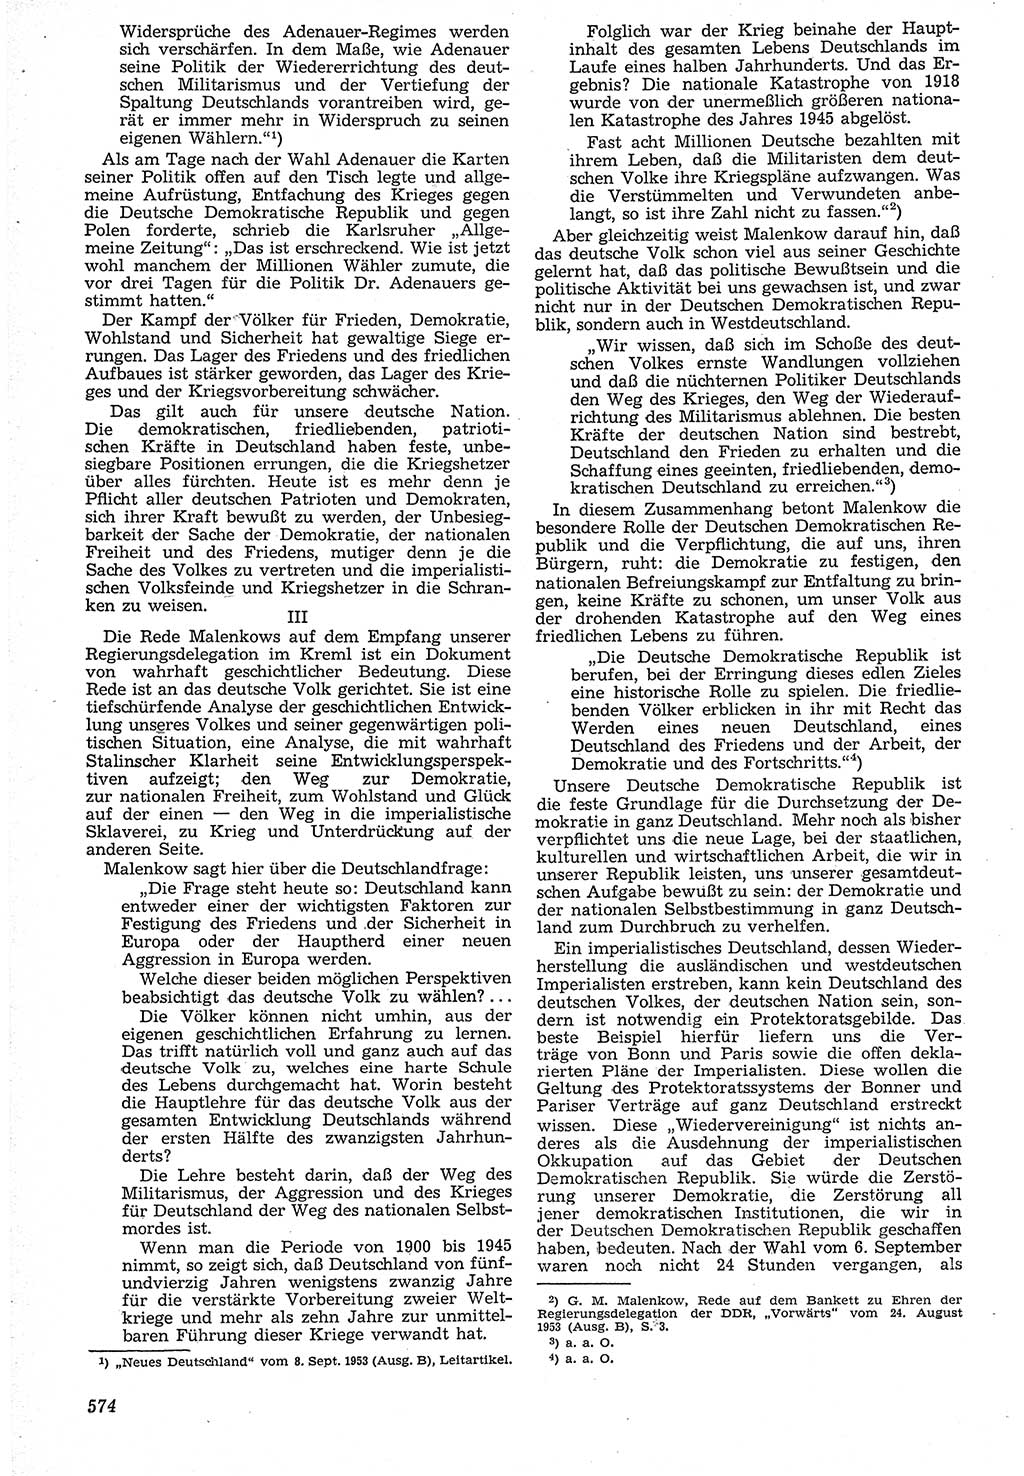 Neue Justiz (NJ), Zeitschrift für Recht und Rechtswissenschaft [Deutsche Demokratische Republik (DDR)], 7. Jahrgang 1953, Seite 574 (NJ DDR 1953, S. 574)